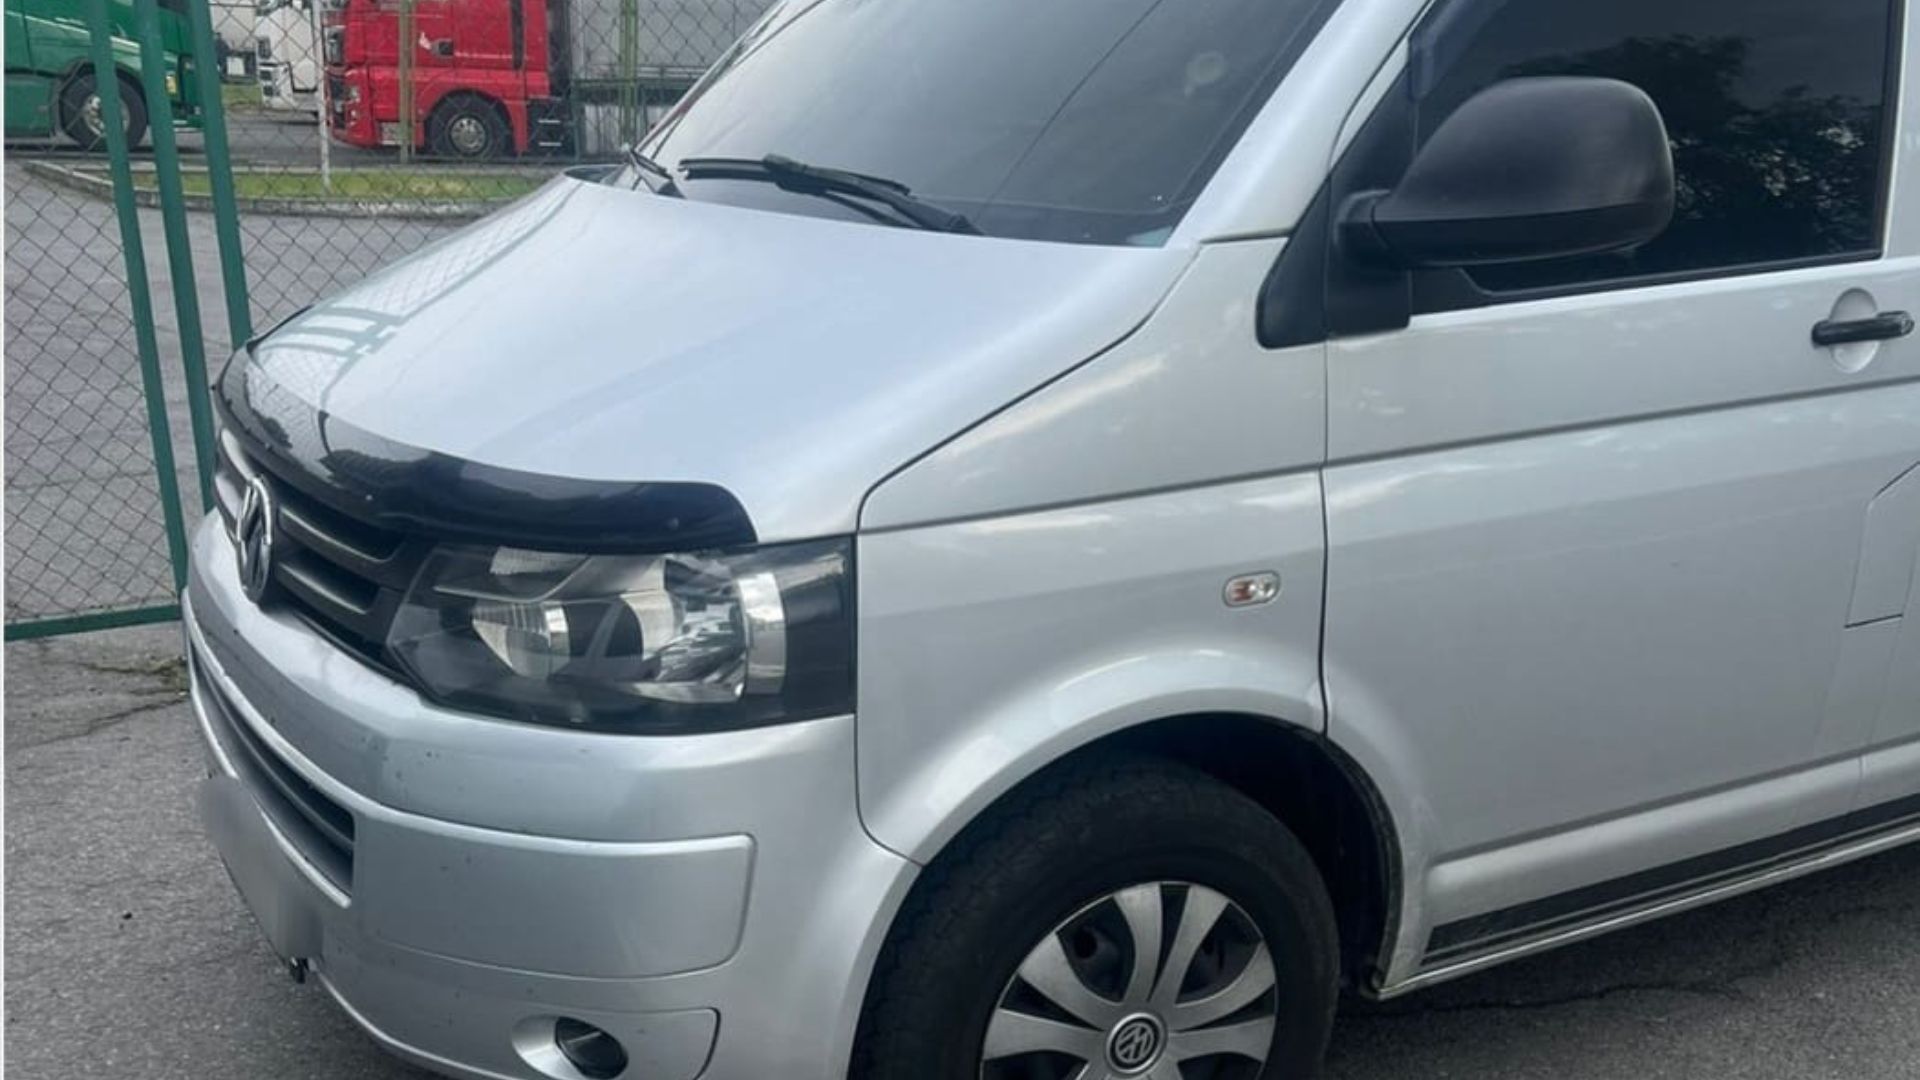 Прикордонники Чопського загону виявили викрадений автомобіль на кордоні з Угорщиною. Це сталося у пункті пропуску «Тиса», де було знайдено легковий автомобіль марки «Volkswagen», який Інтерпол розшукував як викрадений.